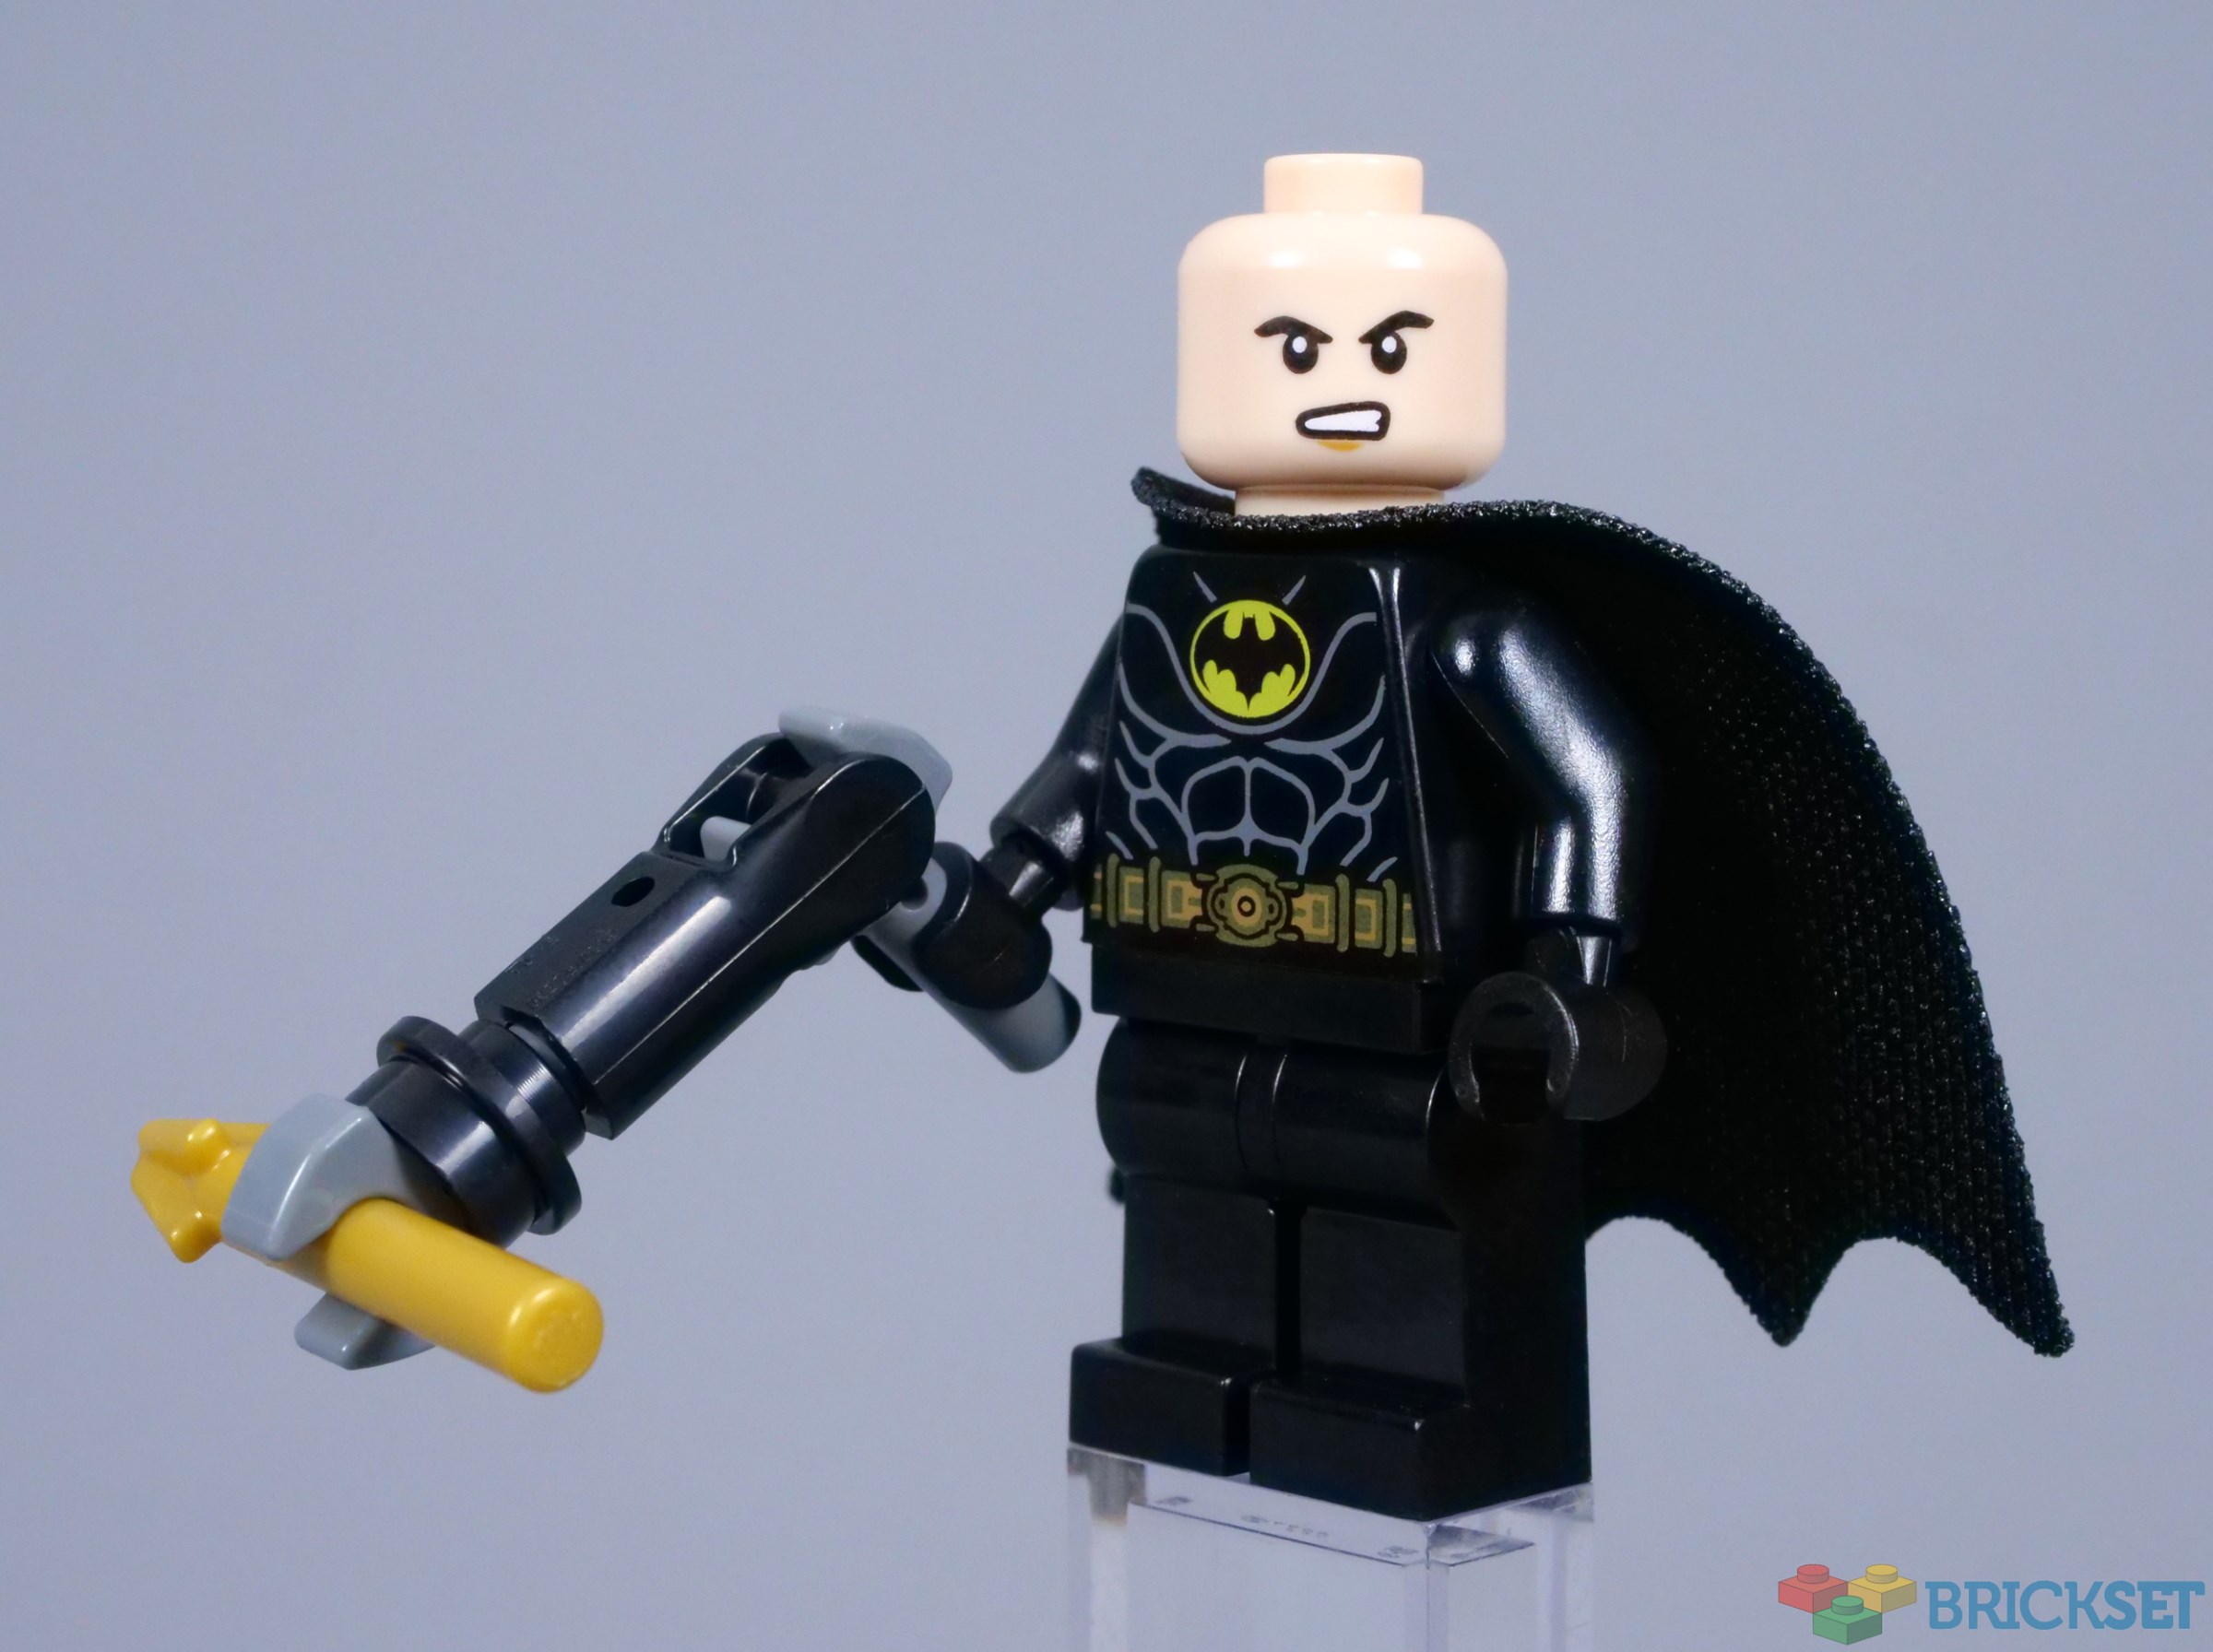 LEGO Batman 89 Batwing: Batman vs. The Joker (76265) - 2023 EARLY